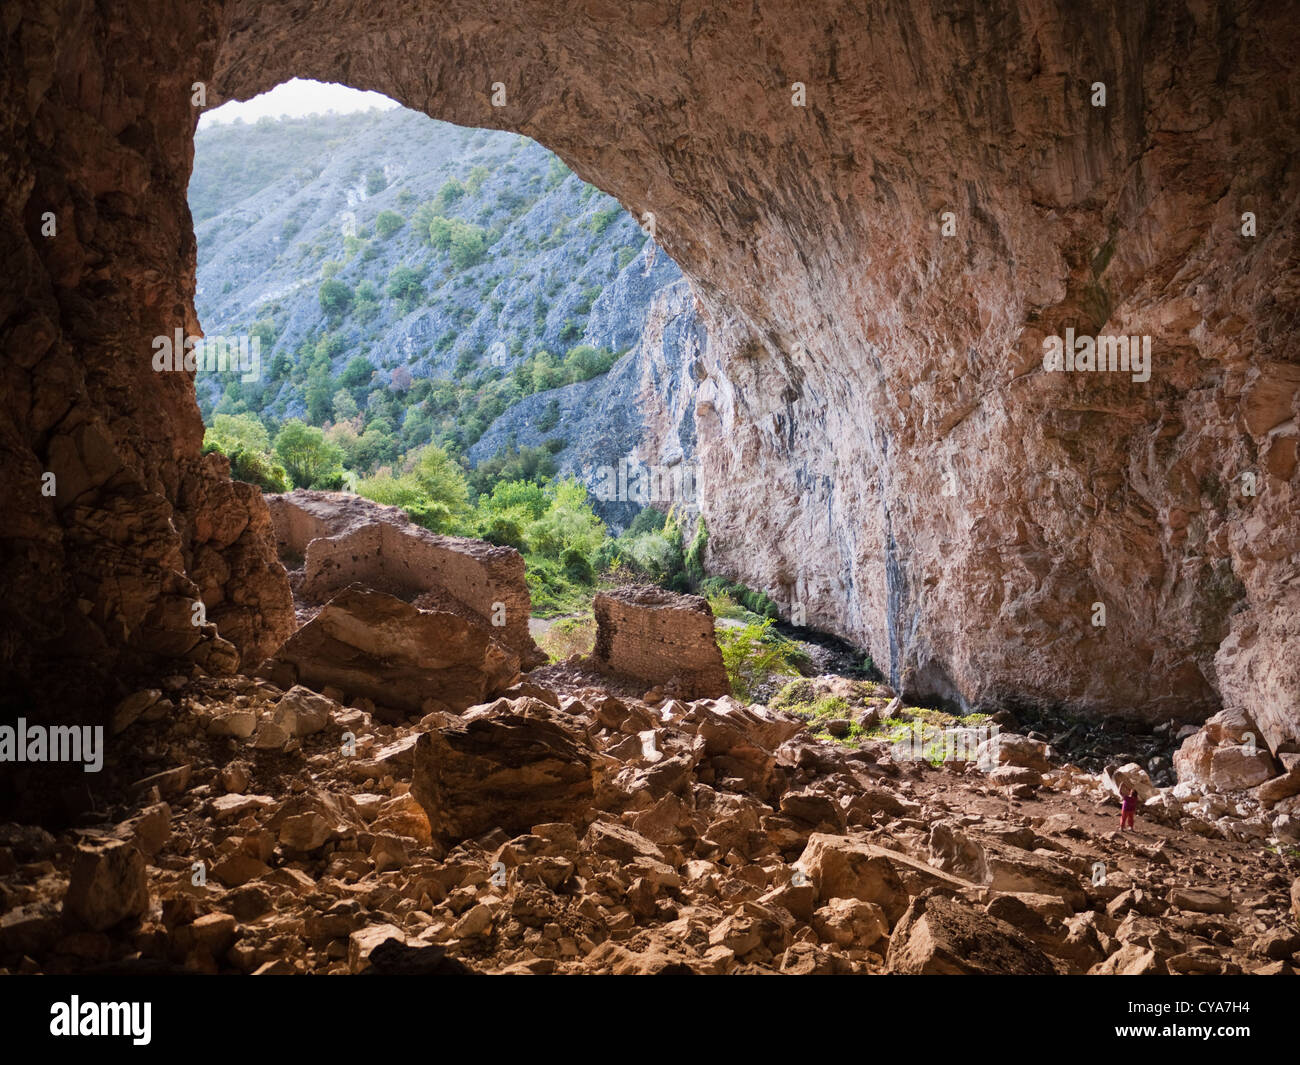 Grotte Pesna en Macédoine, complet avec médiévale en ruines forteresse turque à l'intérieur. Situé entre Skopje et de Makedonski Brod. Banque D'Images